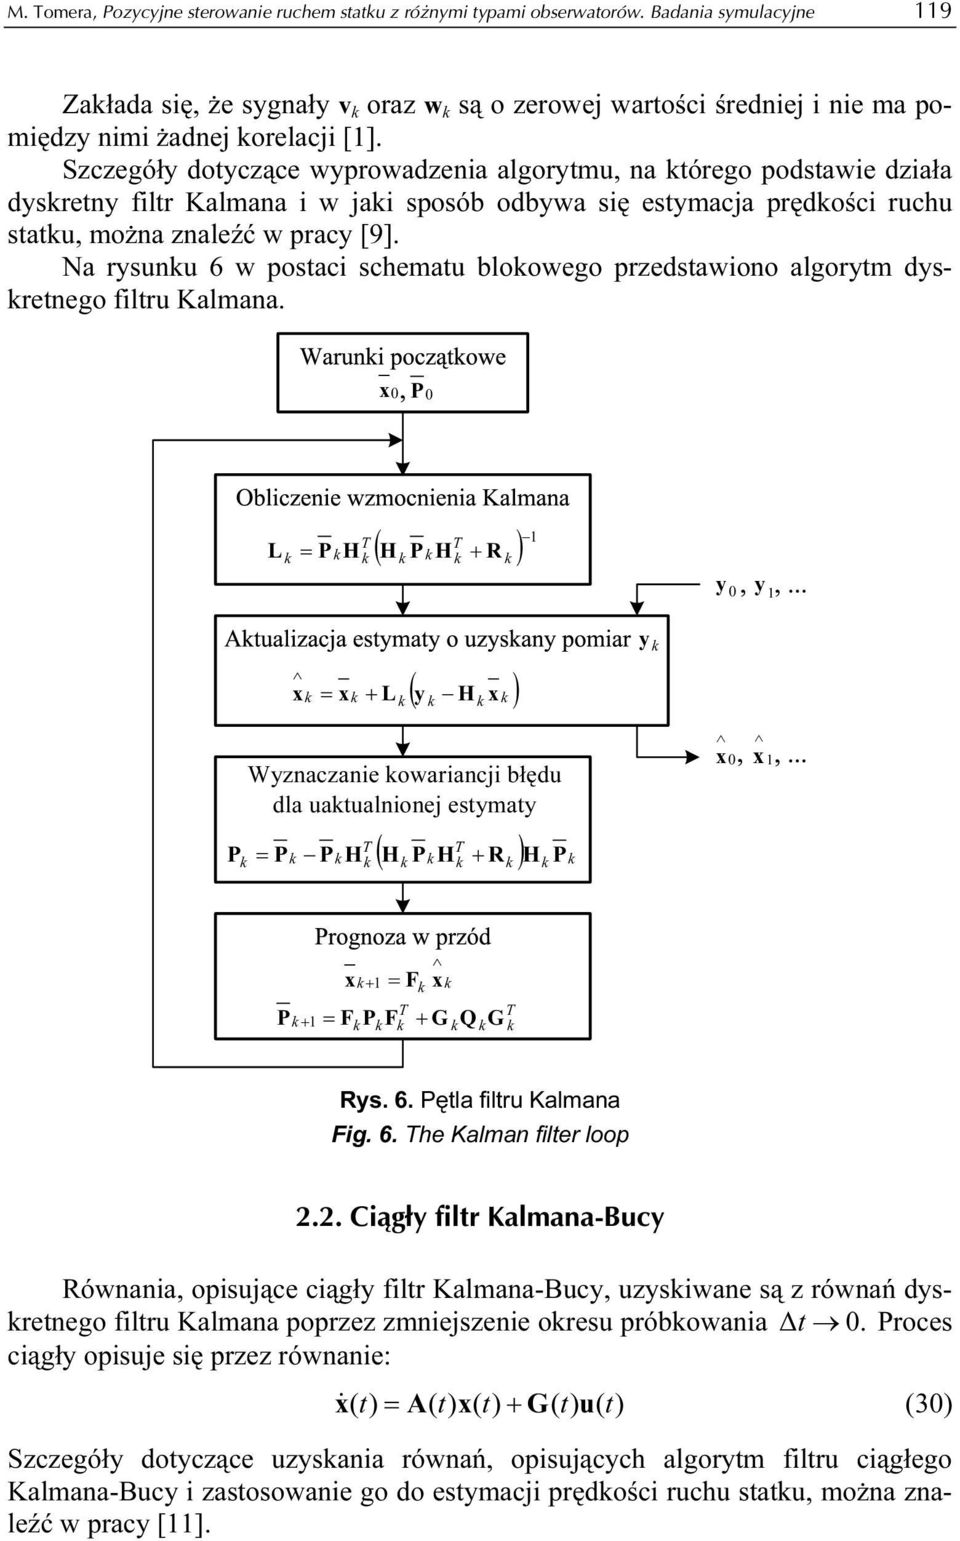 Szczegóły dotyczące wyprowadzenia algorytmu, na tórego podstawie działa dysretny filtr Kalmana i w jai sposób odbywa się estymacja prędości ruchu statu, można znaleźć w pracy [9].